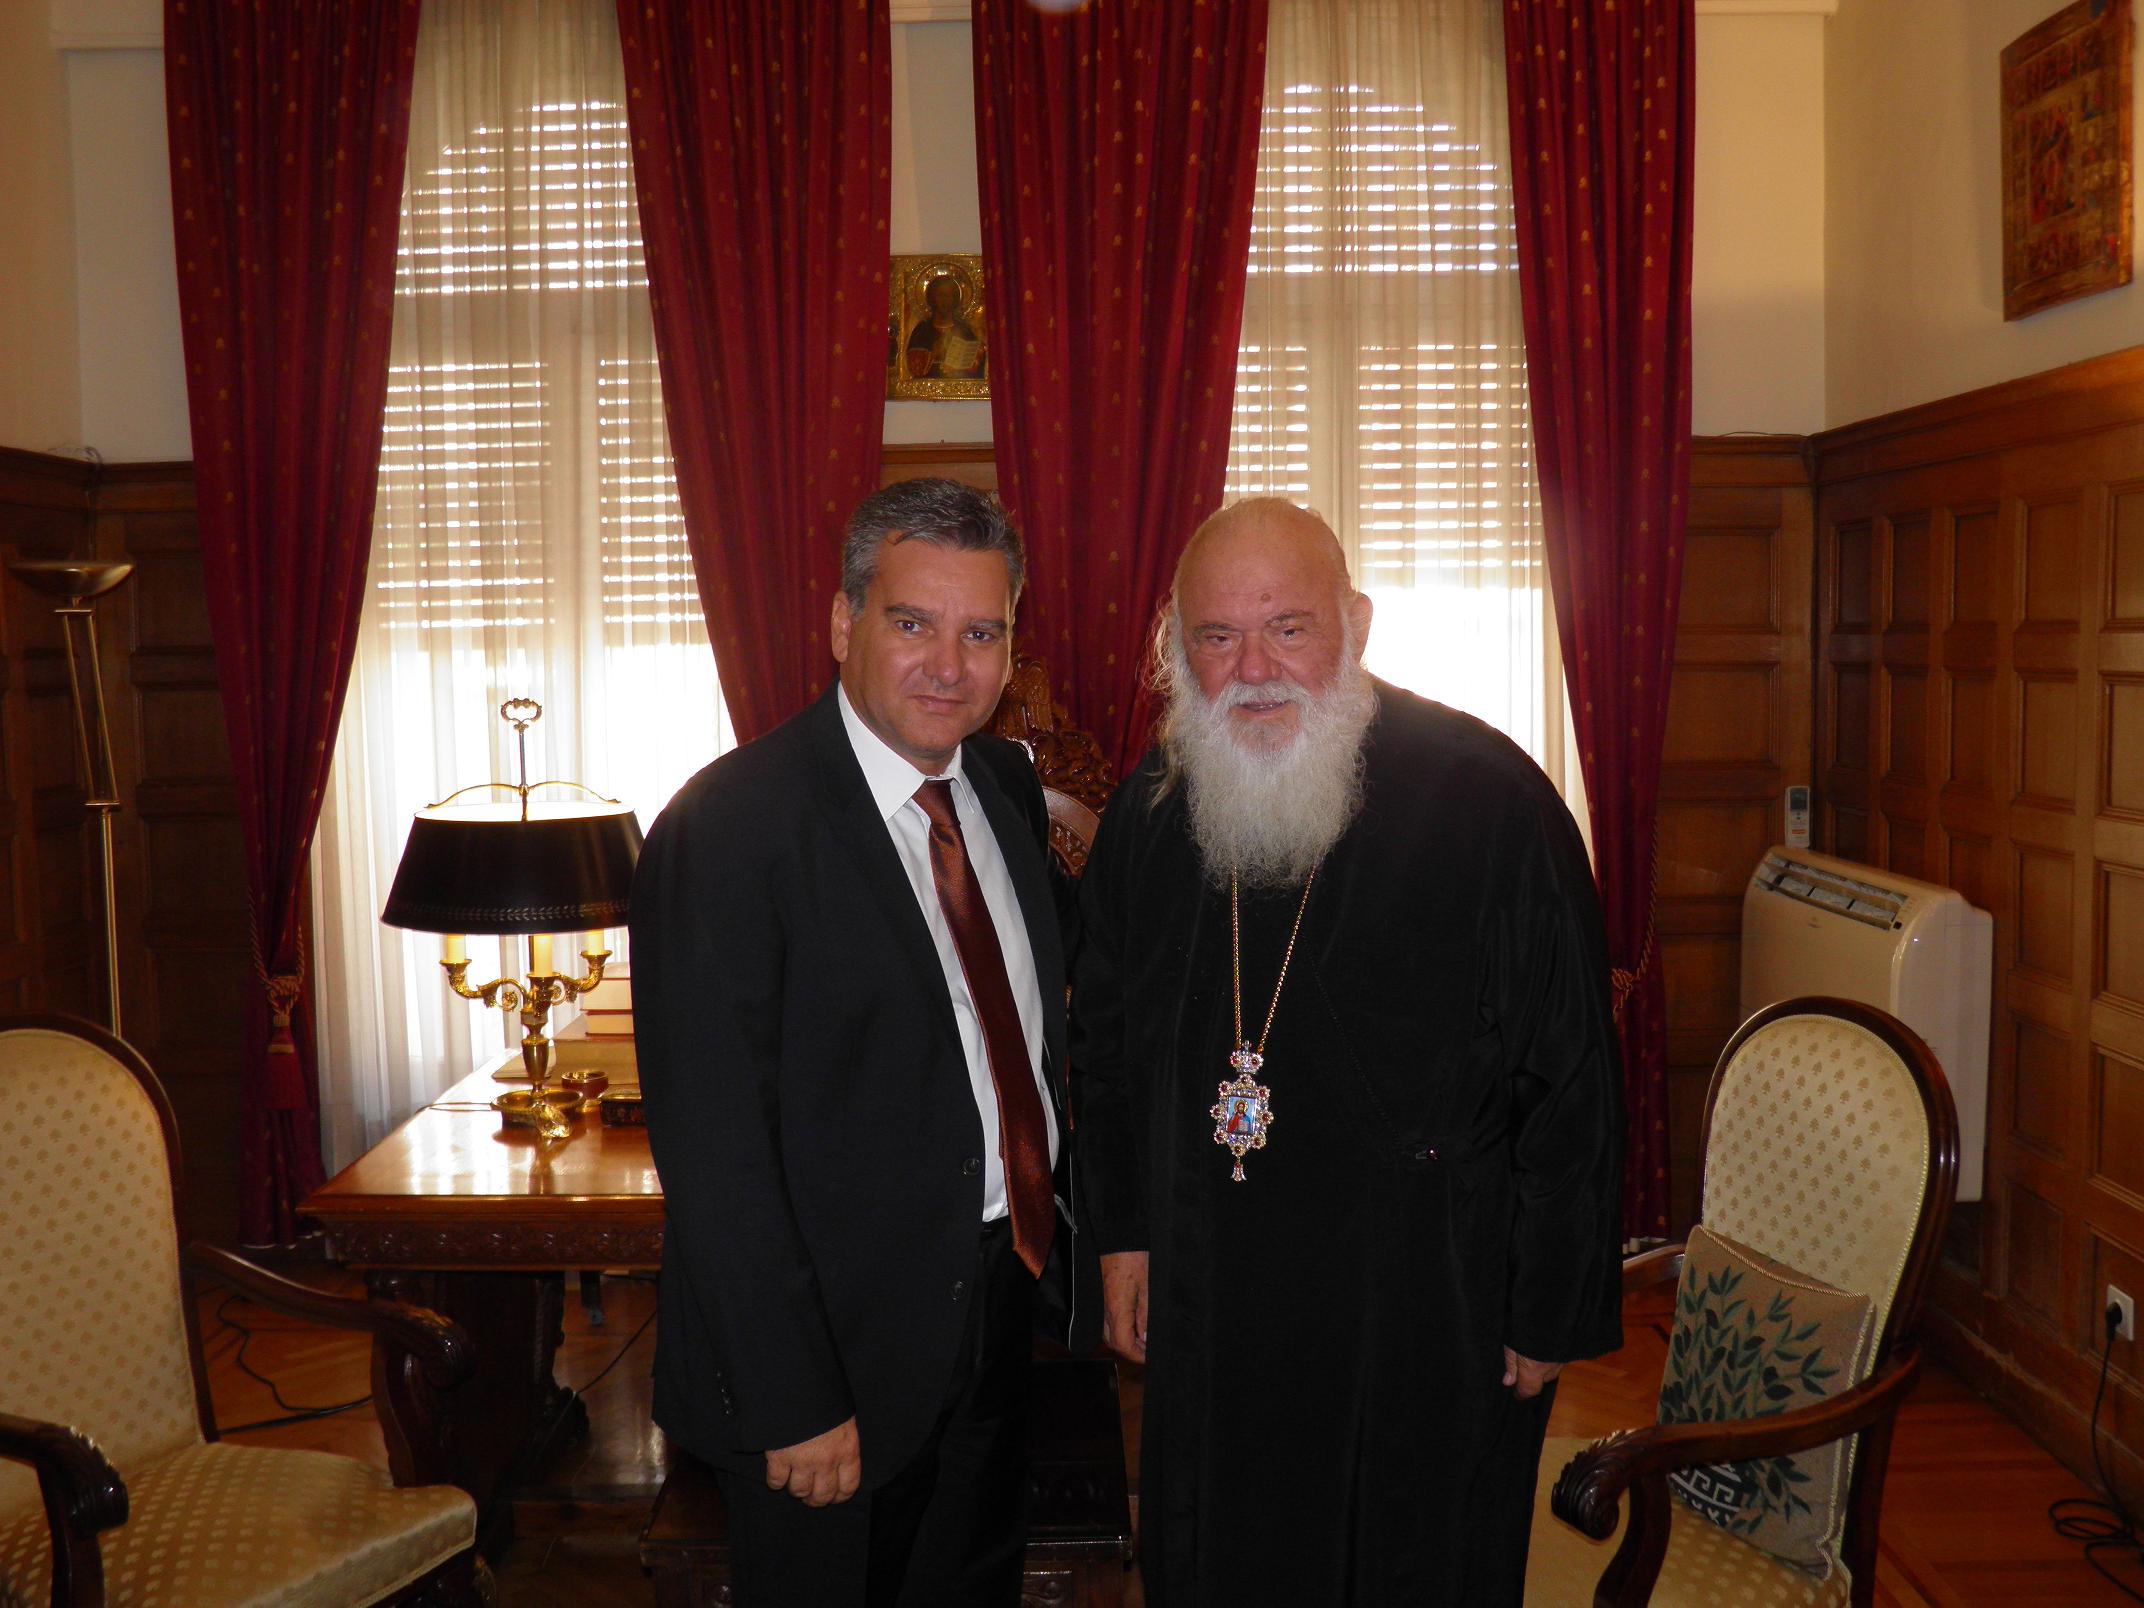 Με την ευλογία του Αρχιεπισκόπου ξεκίνησε ο Λυκούδης την προεκλογική του εκστρατεία